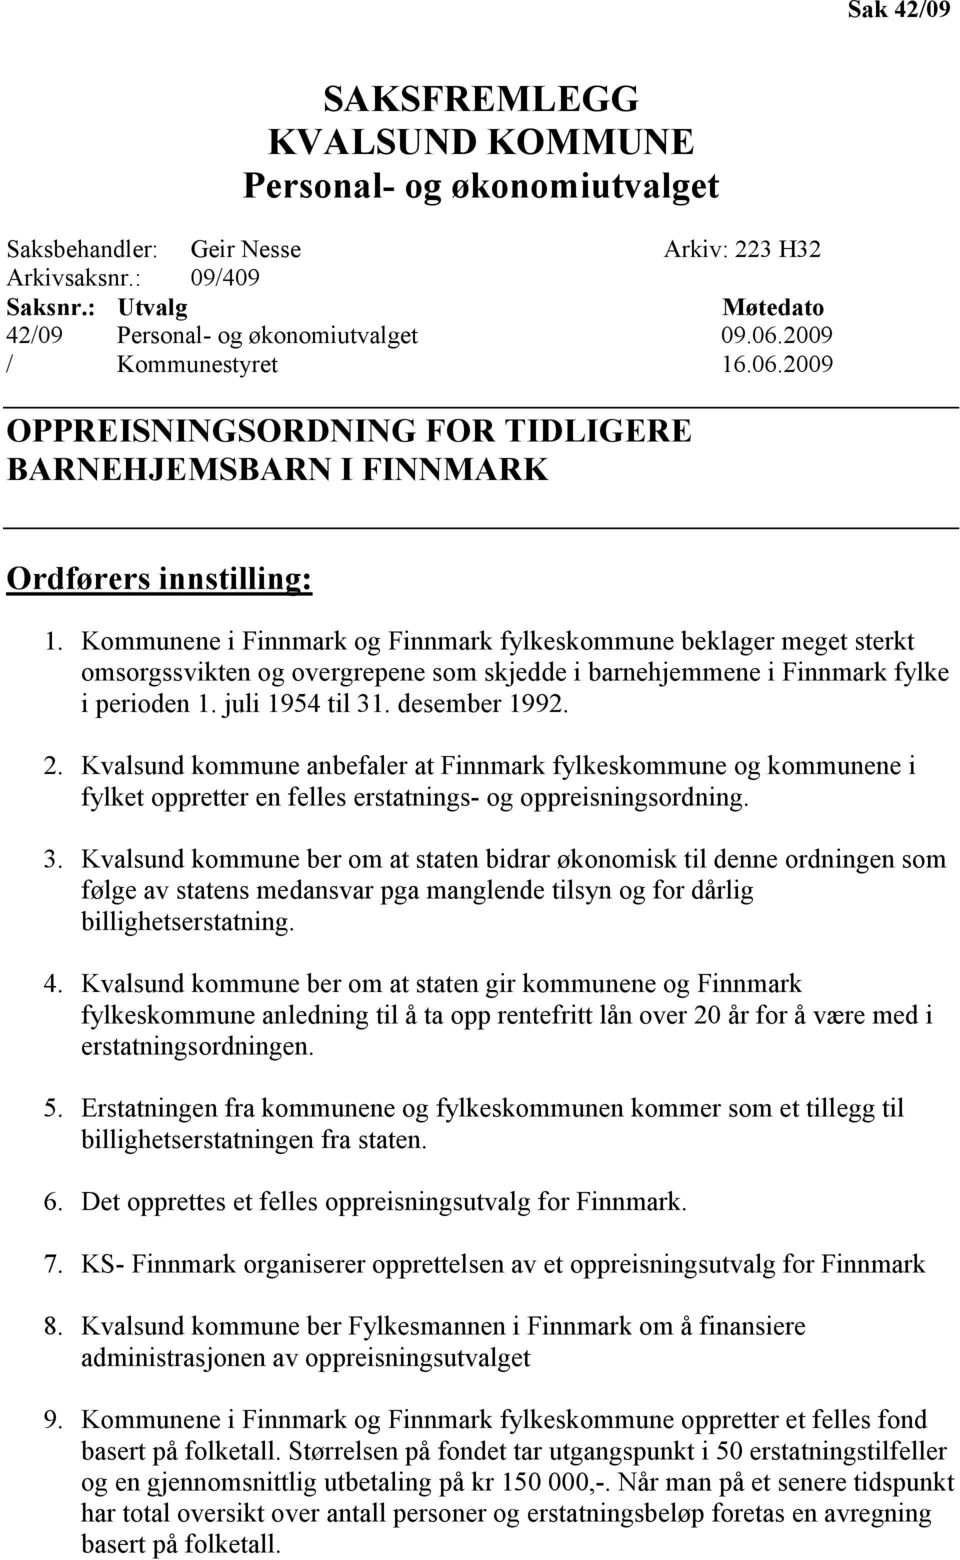 Kommunene i Finnmark og Finnmark fylkeskommune beklager meget sterkt omsorgssvikten og overgrepene som skjedde i barnehjemmene i Finnmark fylke i perioden 1. juli 1954 til 31. desember 1992. 2.